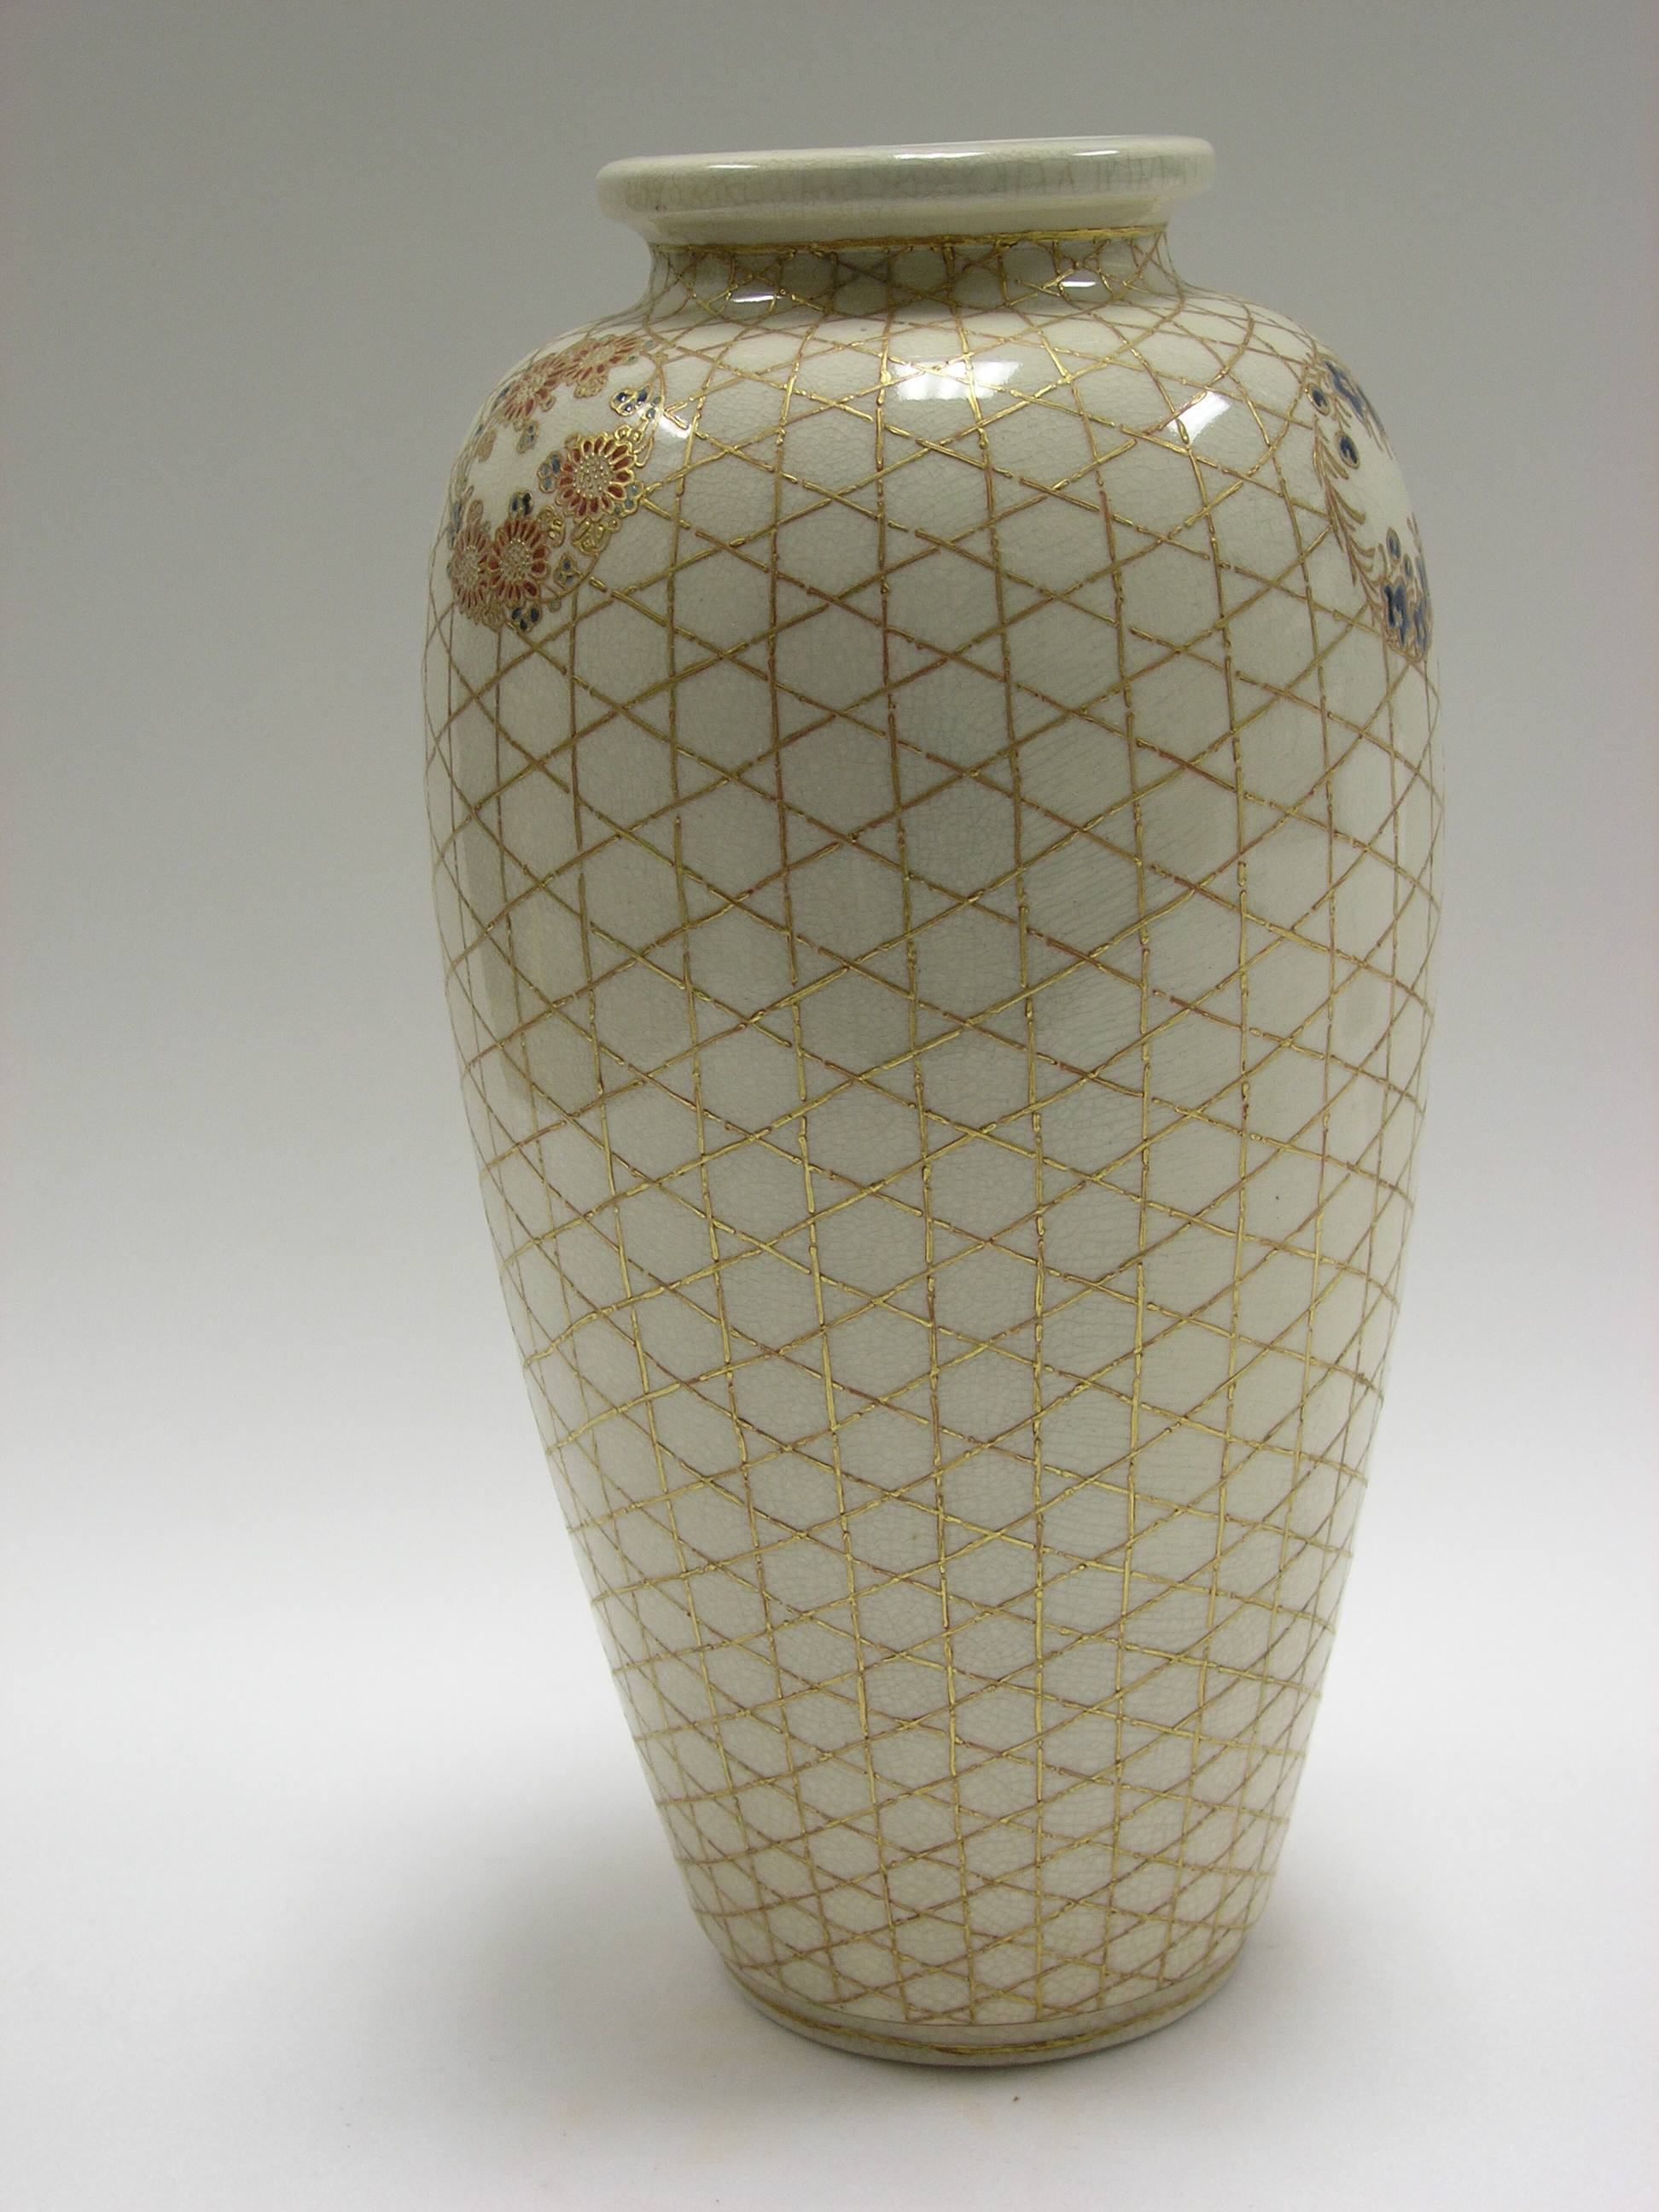 26 Fantastic Satsuma Porcelain Vase 2024 free download satsuma porcelain vase of filevase am 1980 257 5 wikimedia commons inside filevase am 1980 257 5